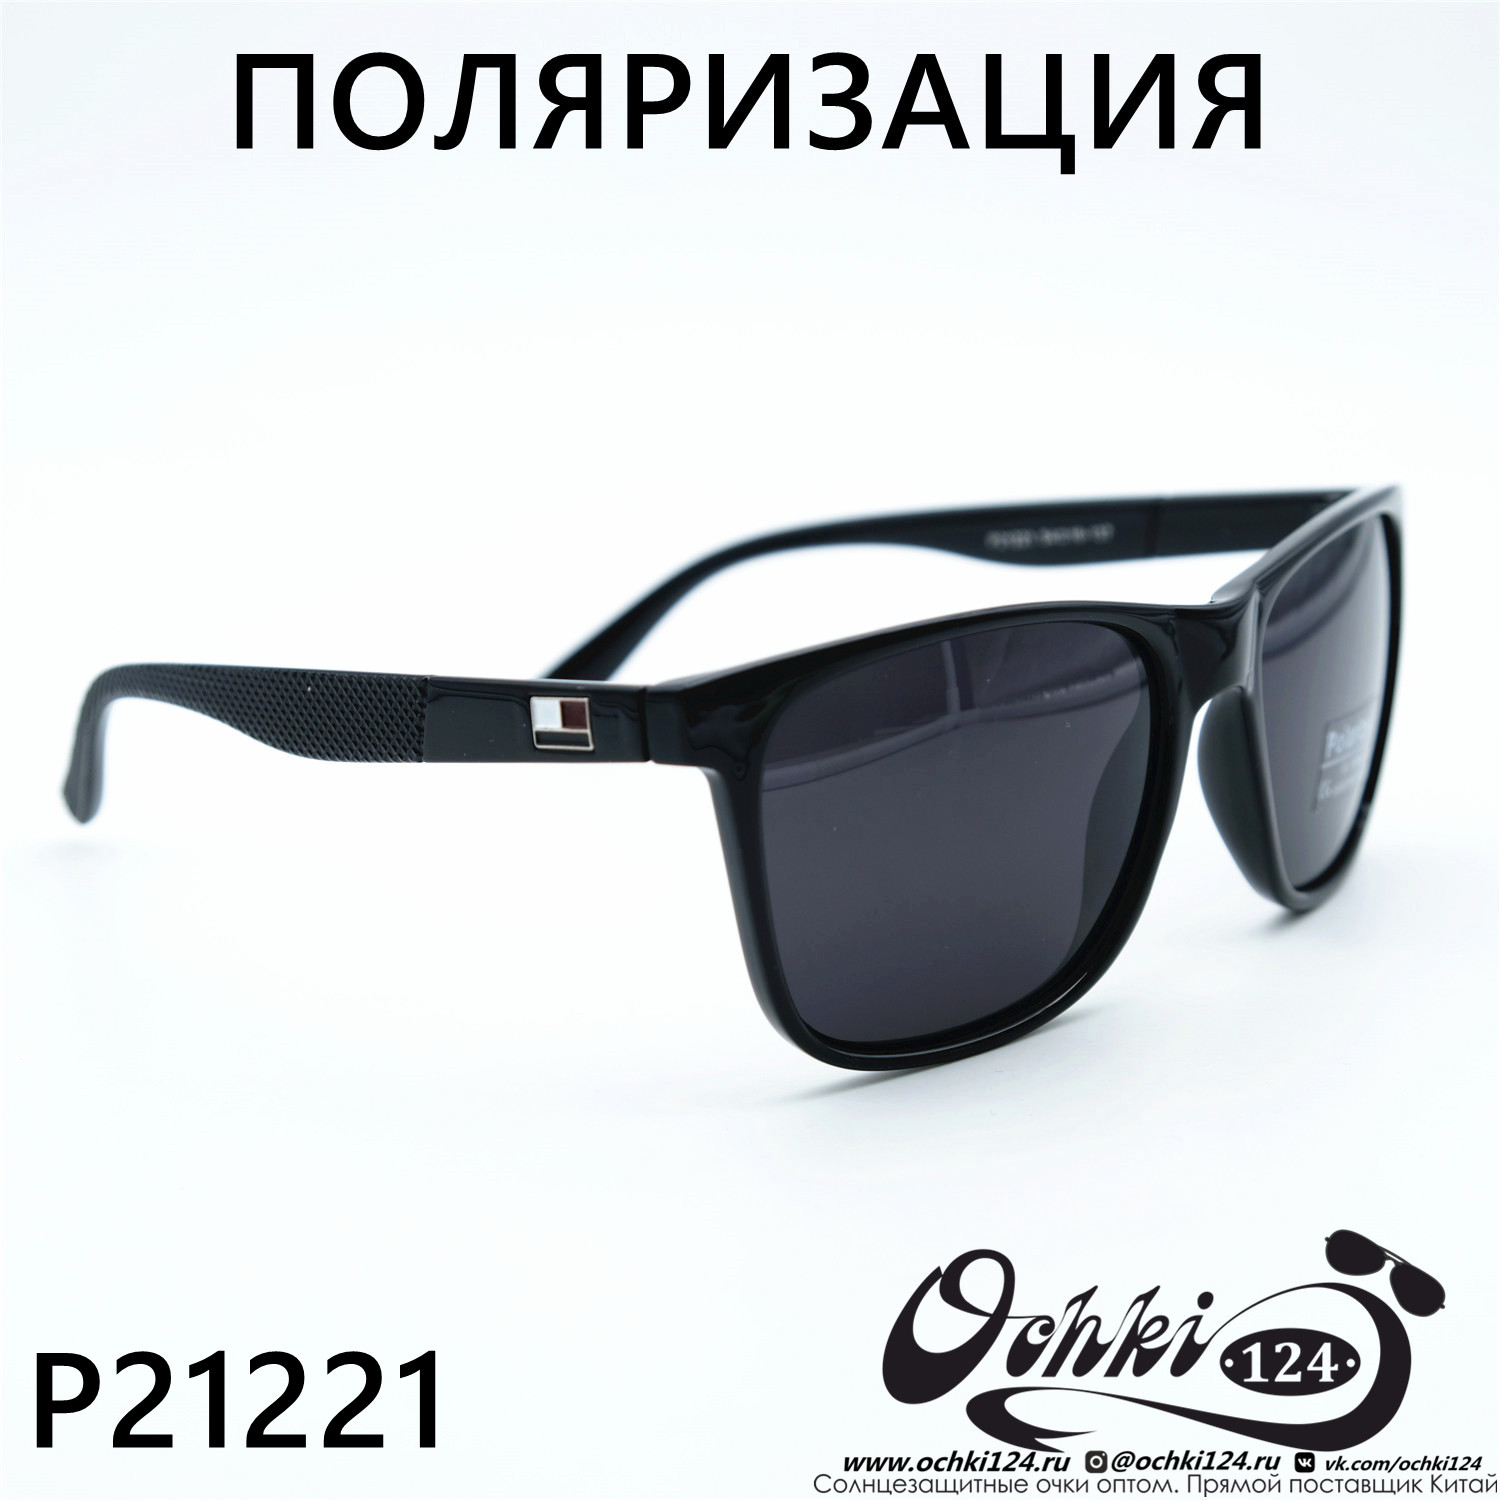  Солнцезащитные очки картинка 2023 Мужские Стандартные Polarized P21221-C1 